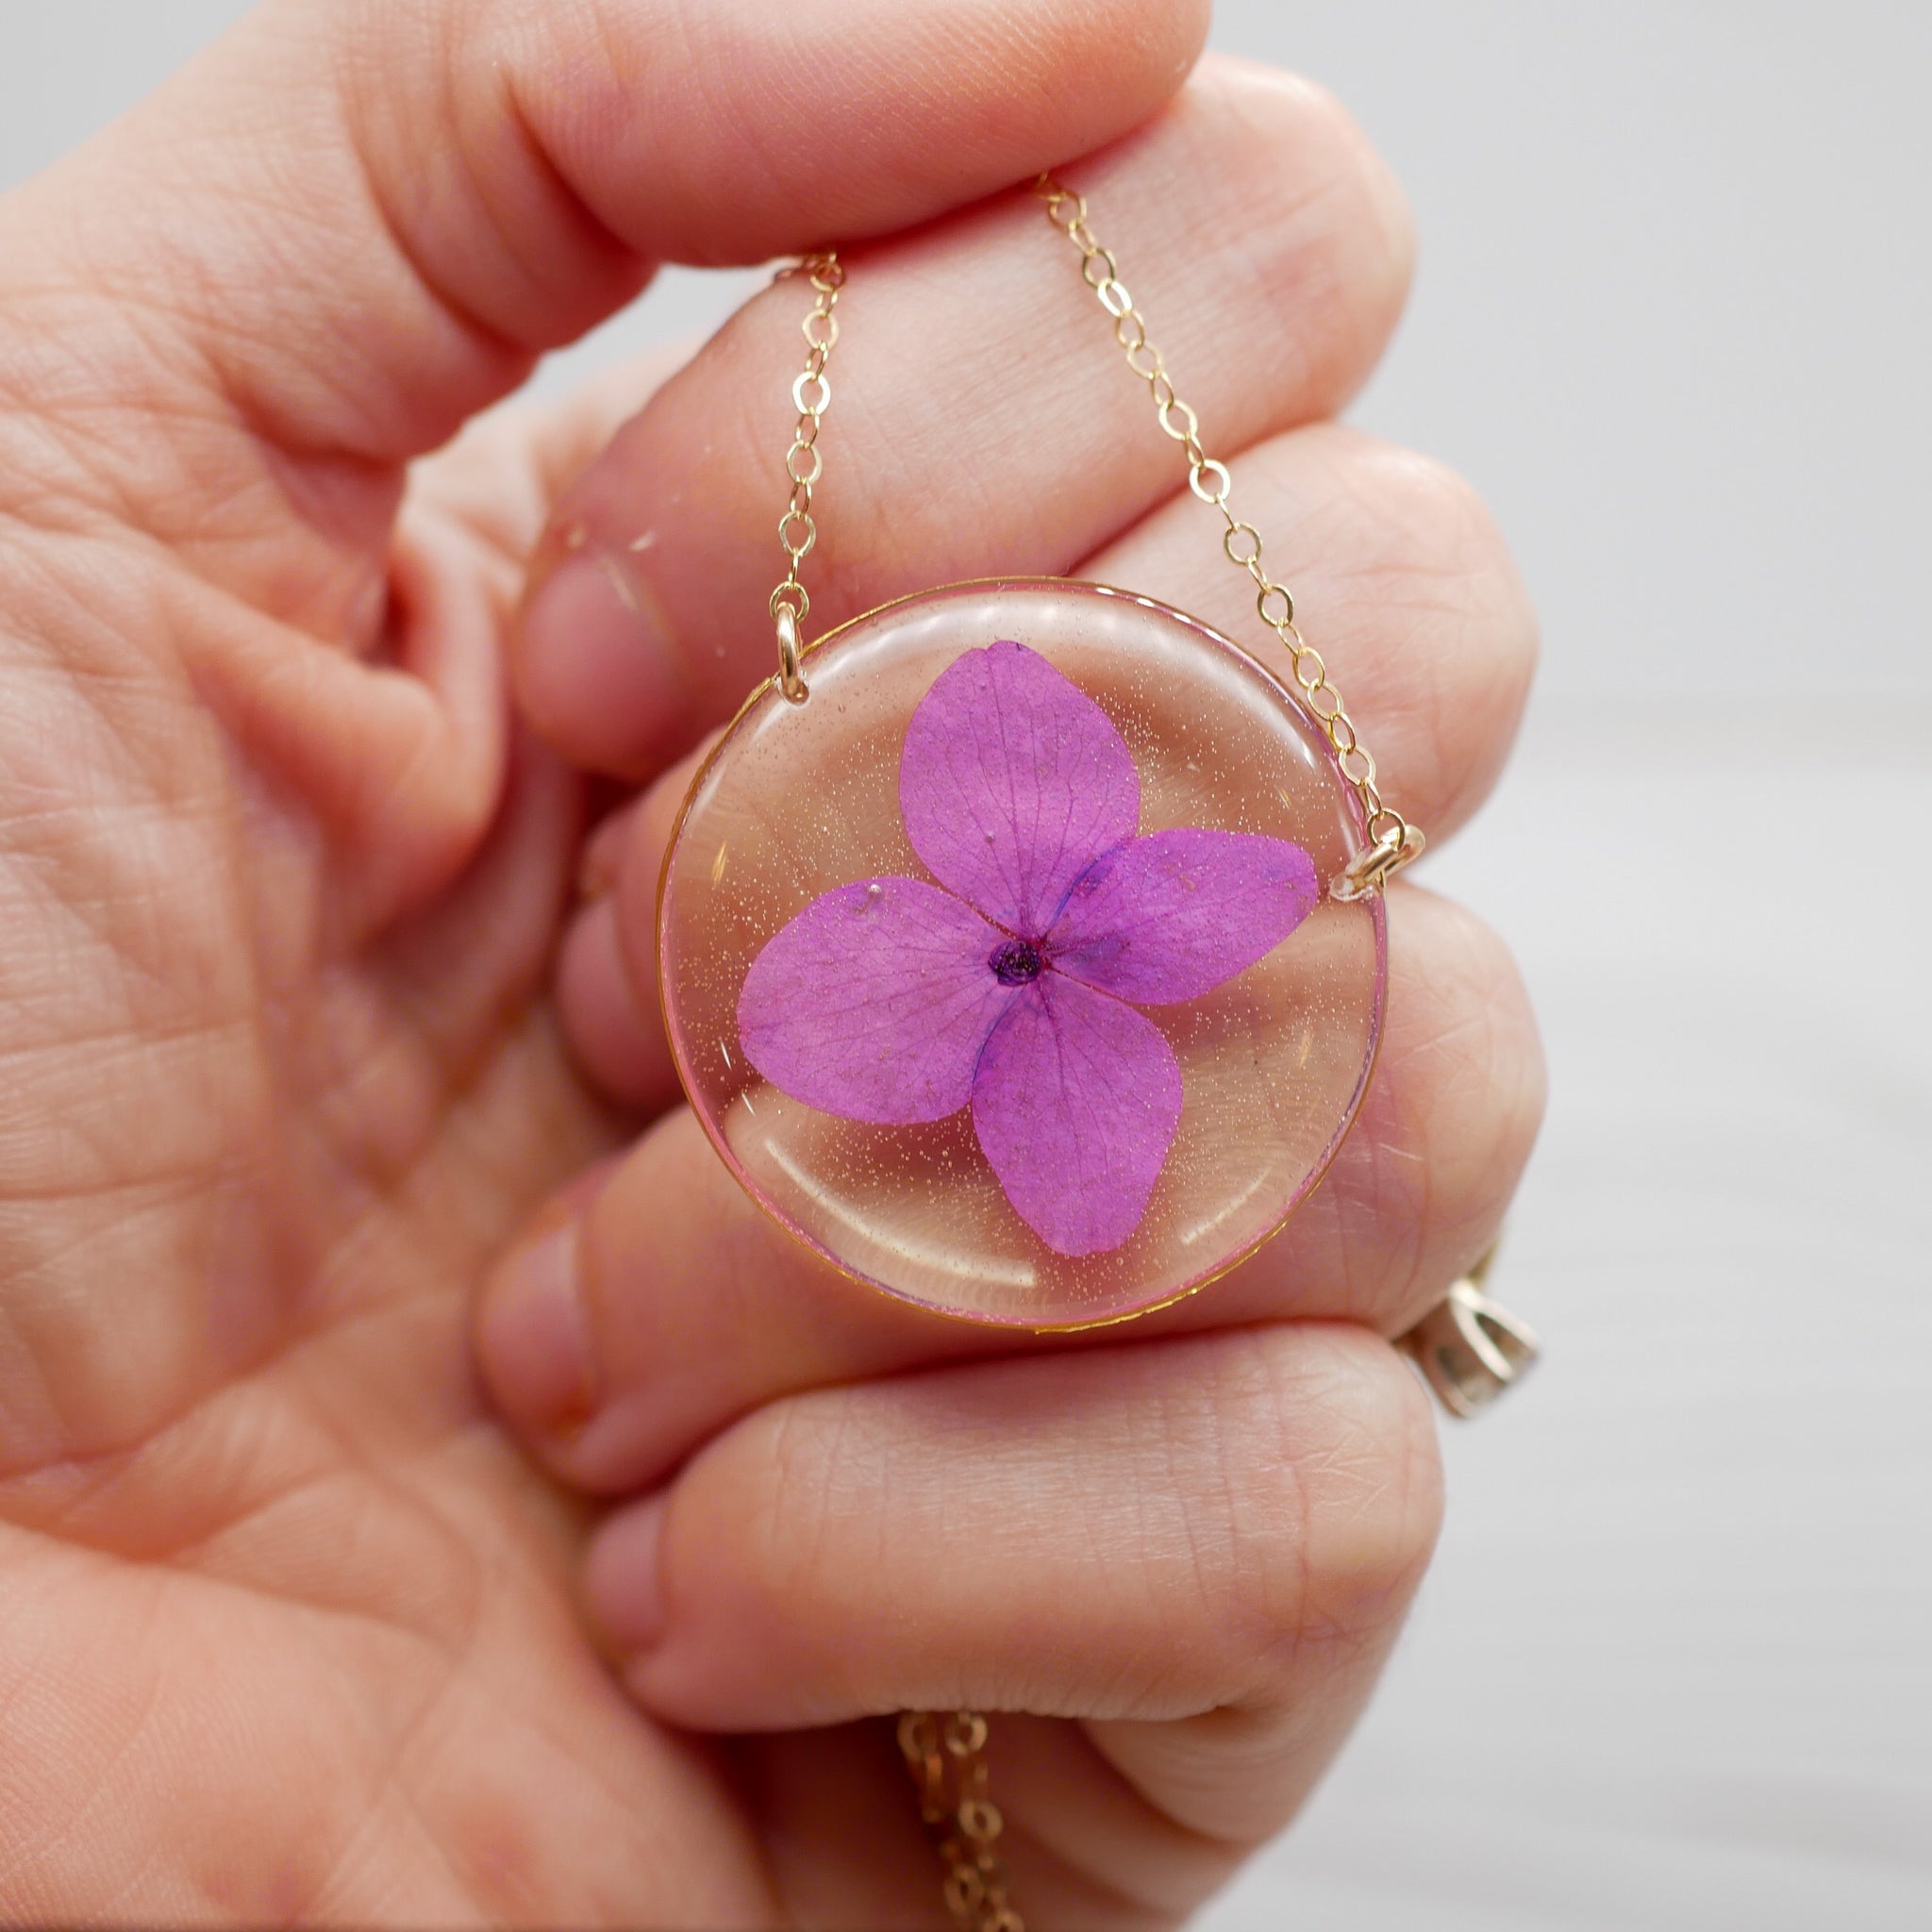 Purple hydrangea necklace